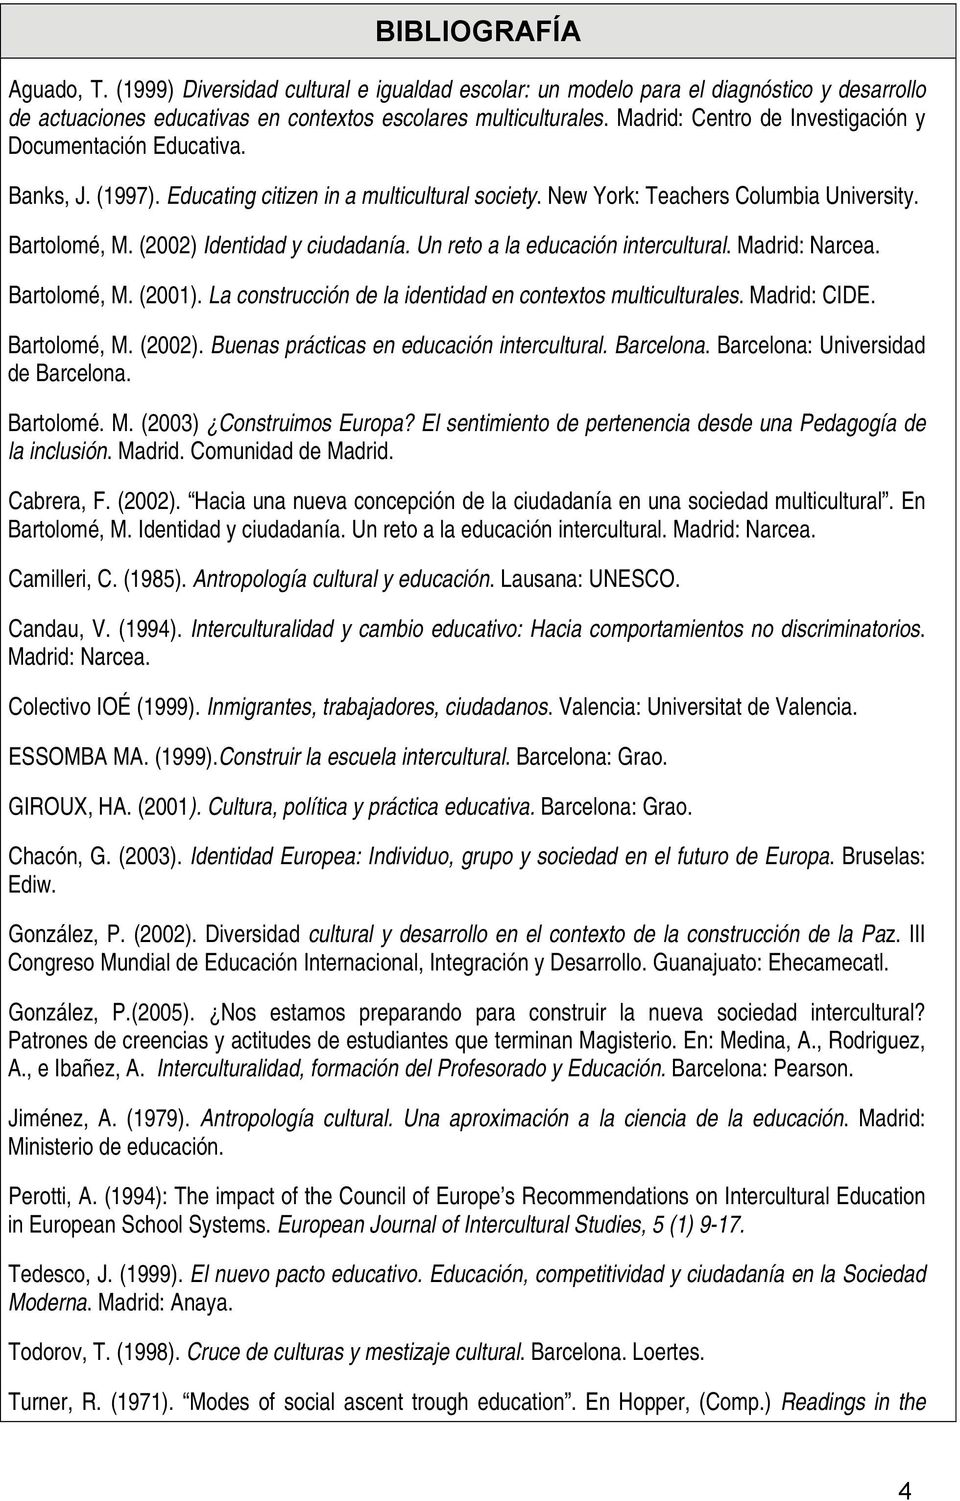 (2002) Identidad y ciudadanía. Un reto a la educación intercultural. Madrid: Narcea. Bartolomé, M. (2001). La construcción de la identidad en contextos multiculturales. Madrid: CIDE. Bartolomé, M. (2002).